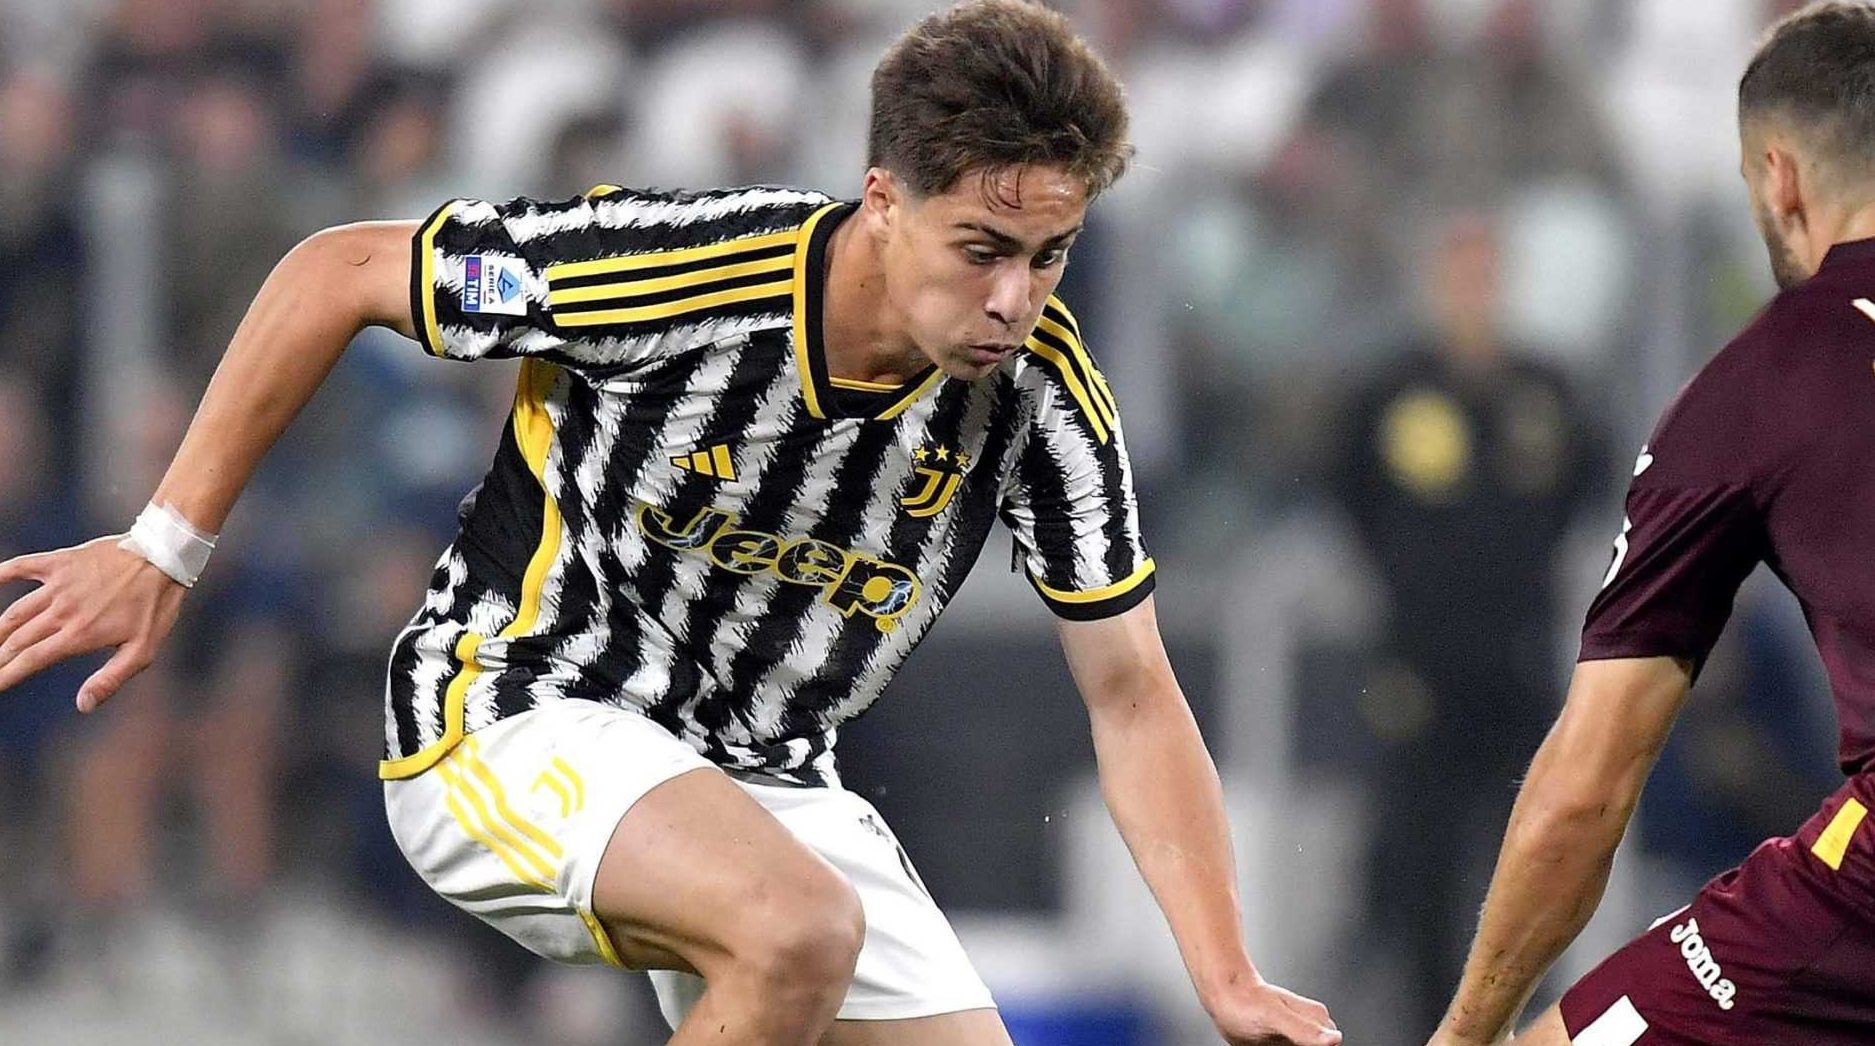 Frosinone-Juventus (1-2): analisi tattica e considerazioni